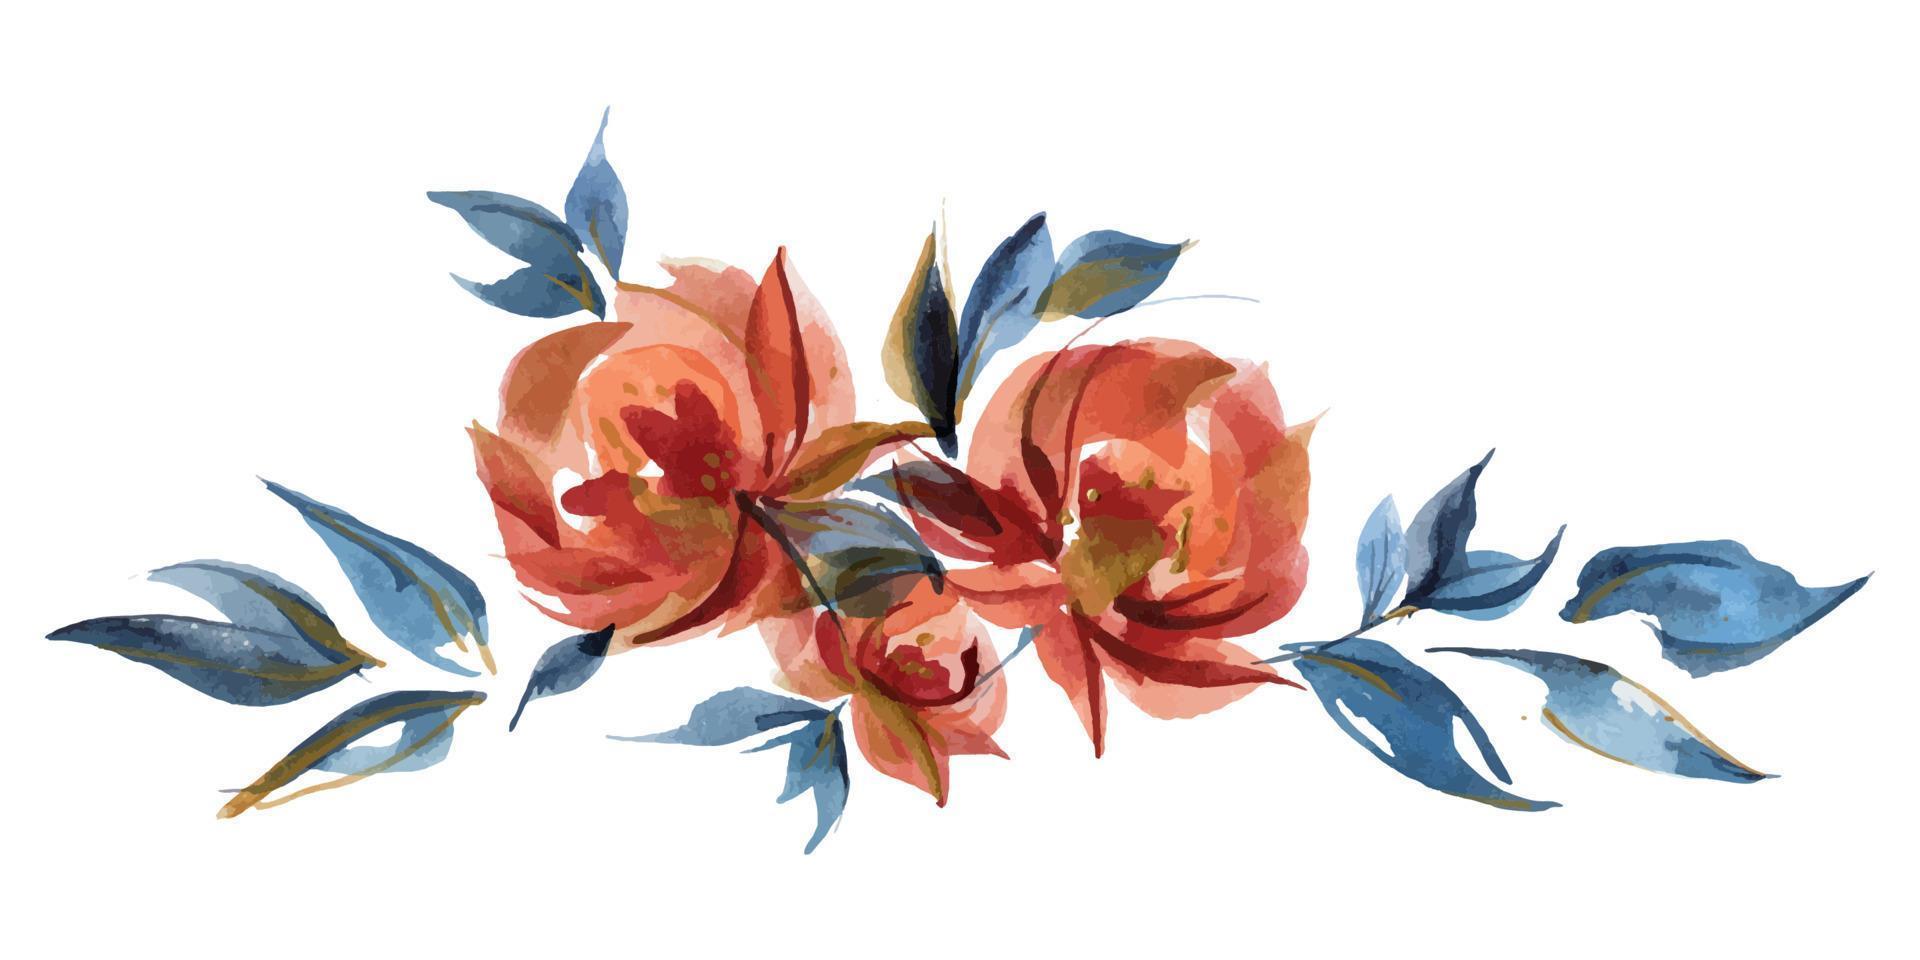 viñeta de guirnalda floral de rosas azules y naranjas en tendencia folk cottege vector